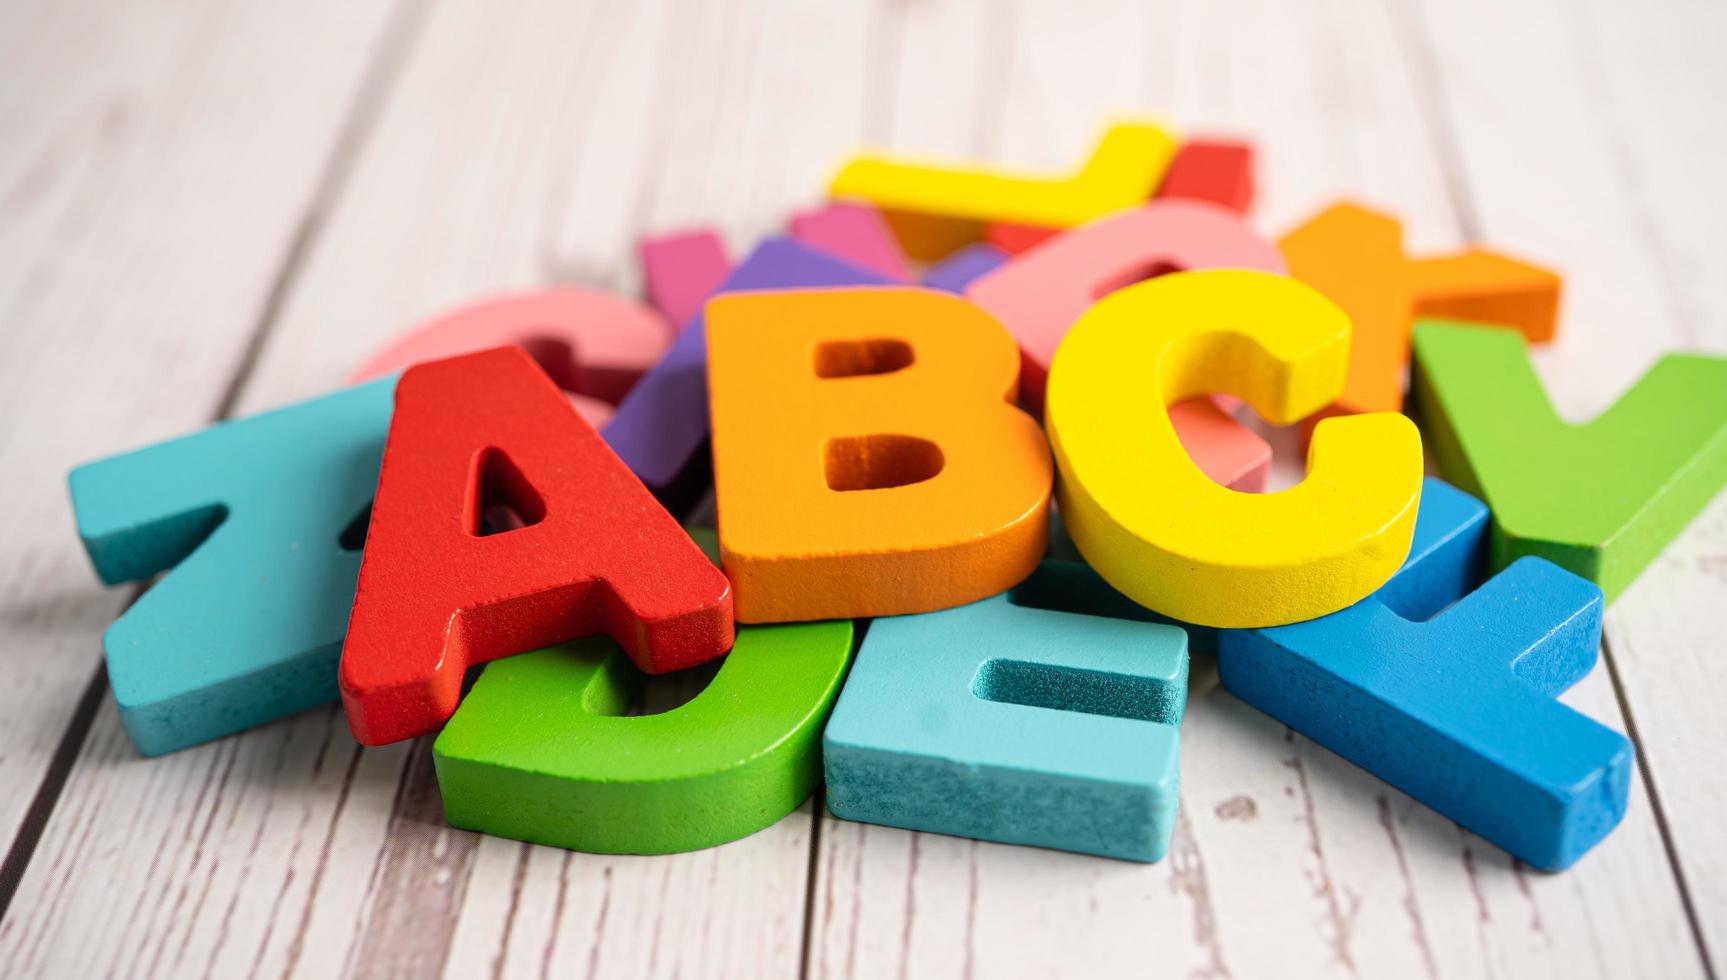 alfabeto inglese in legno colorato per l'istruzione l'apprendimento scolastico foto